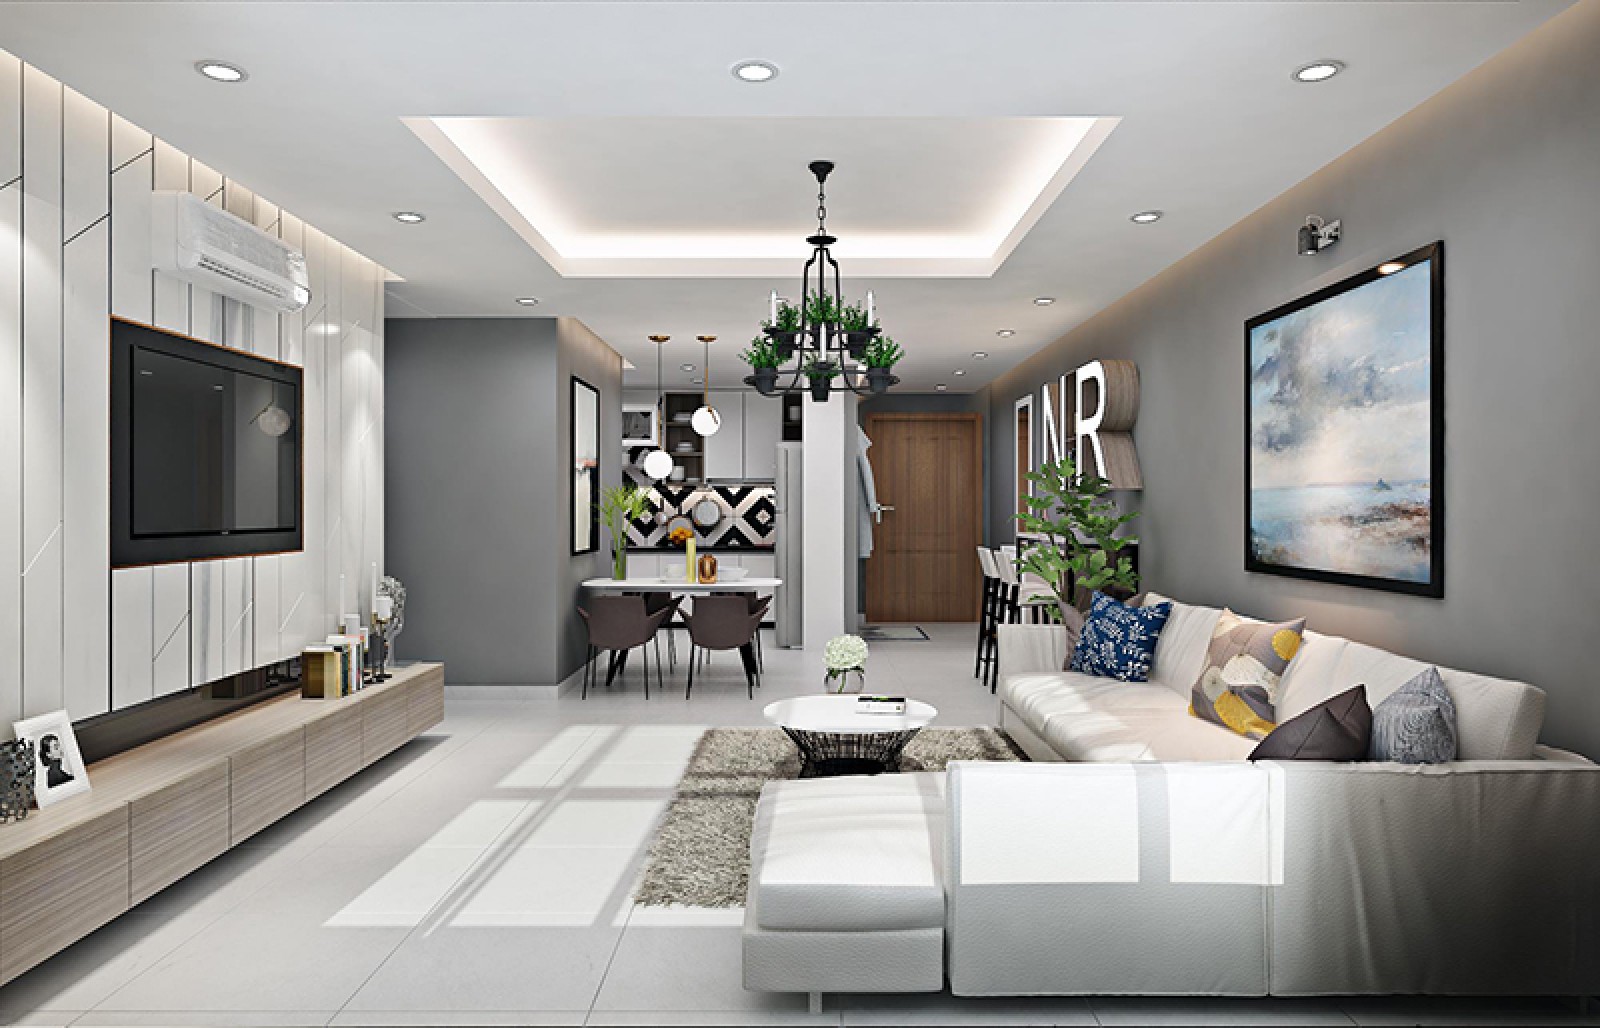 Cho thuê căn hộ Urban Hill, 109 m2, 3 PN 2 WC, full nội thất mới, giá 37.5 triệu/1 tháng